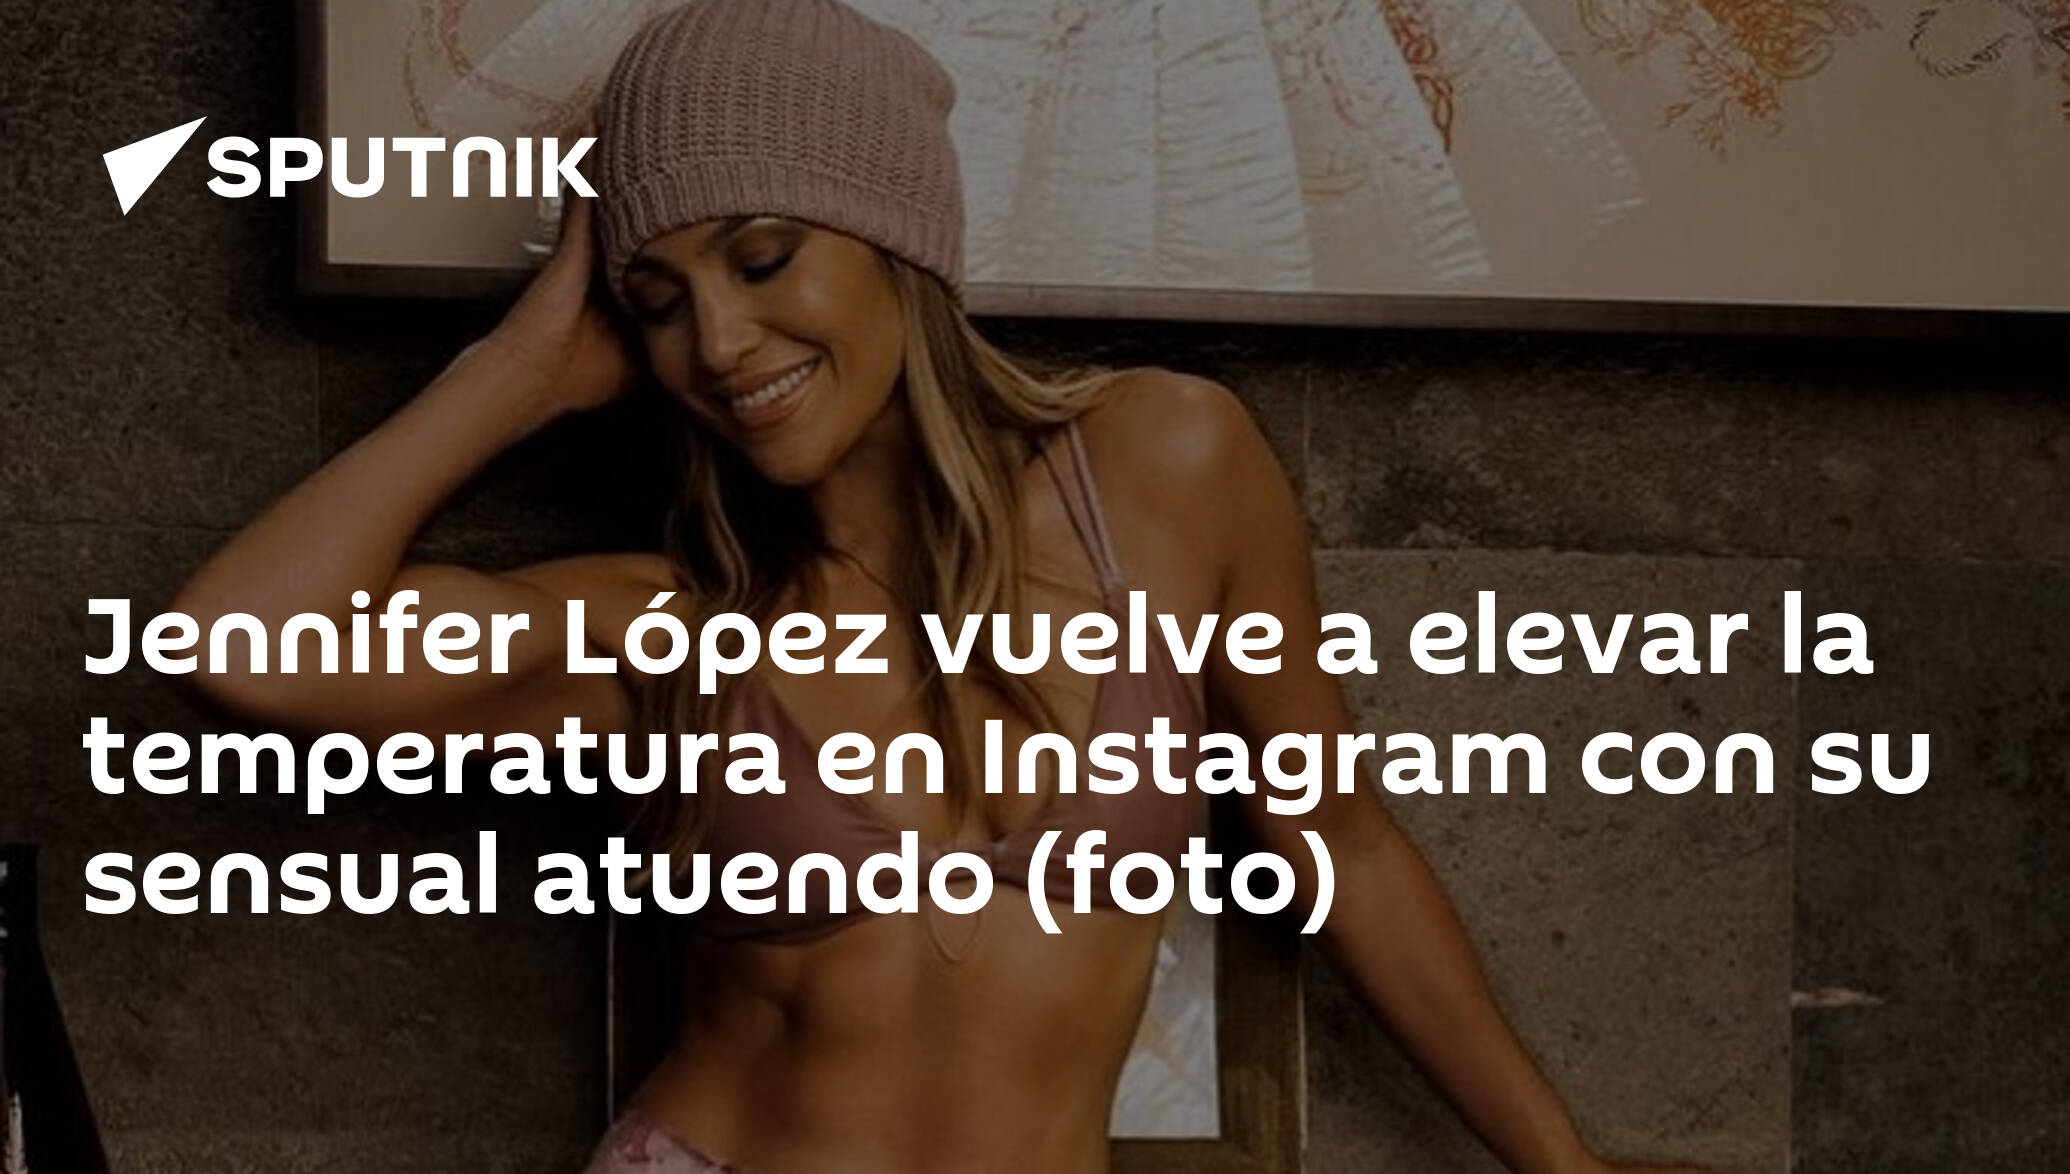 Jennifer Lopez lleva unos leggings estampados en color neón en Instagram